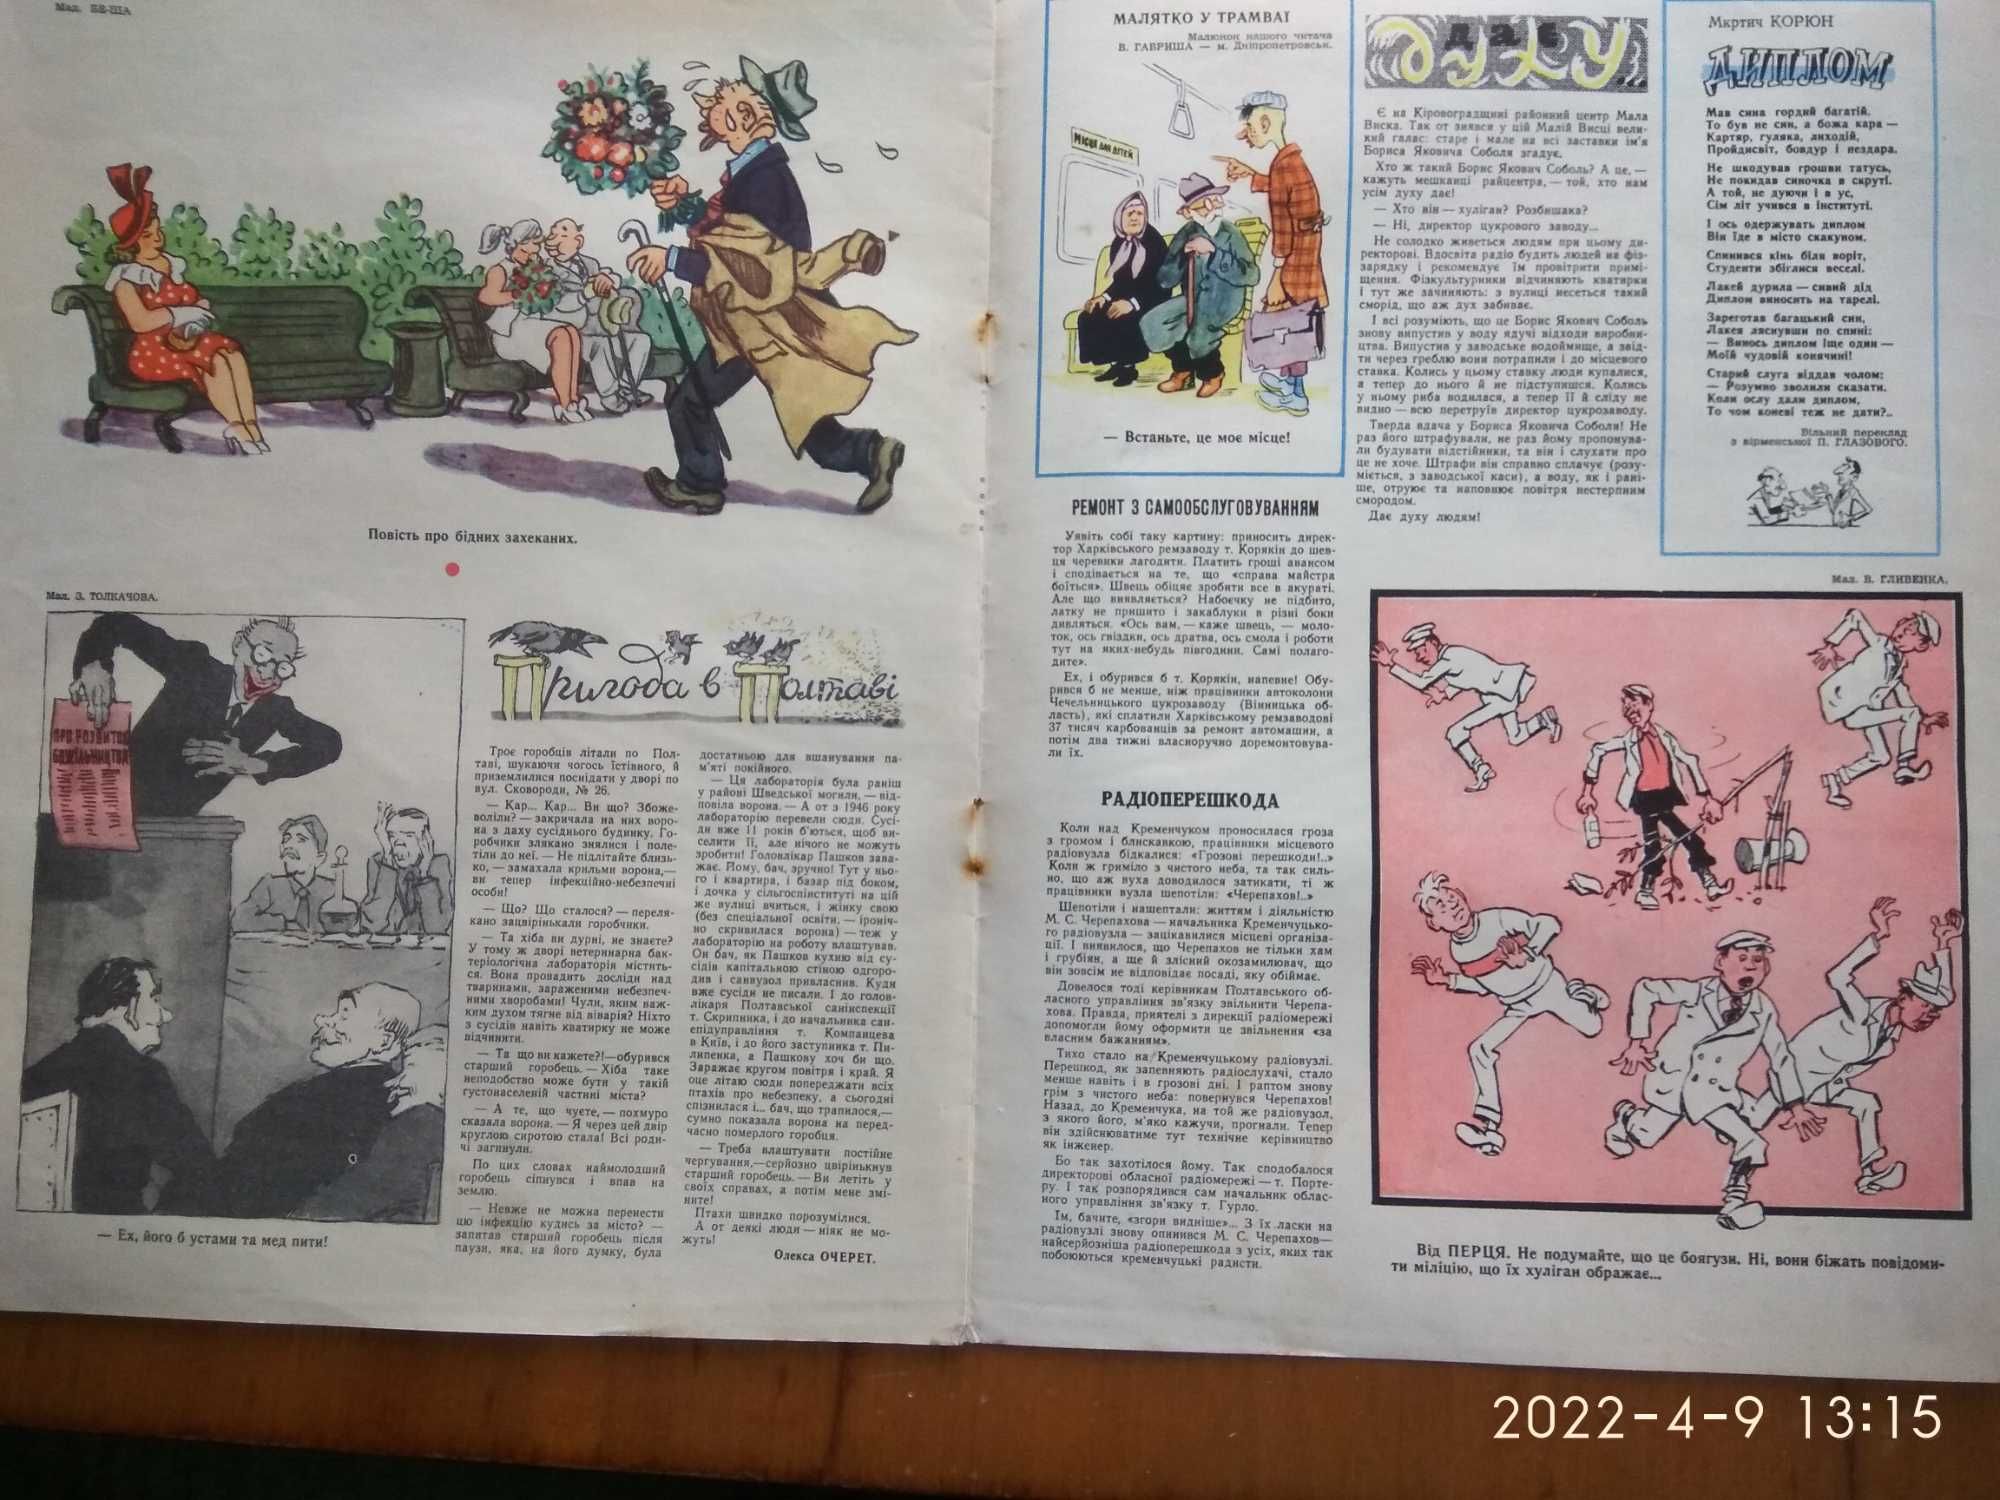 Журналы "Перець" √10 и √14 , 1958 года издания.